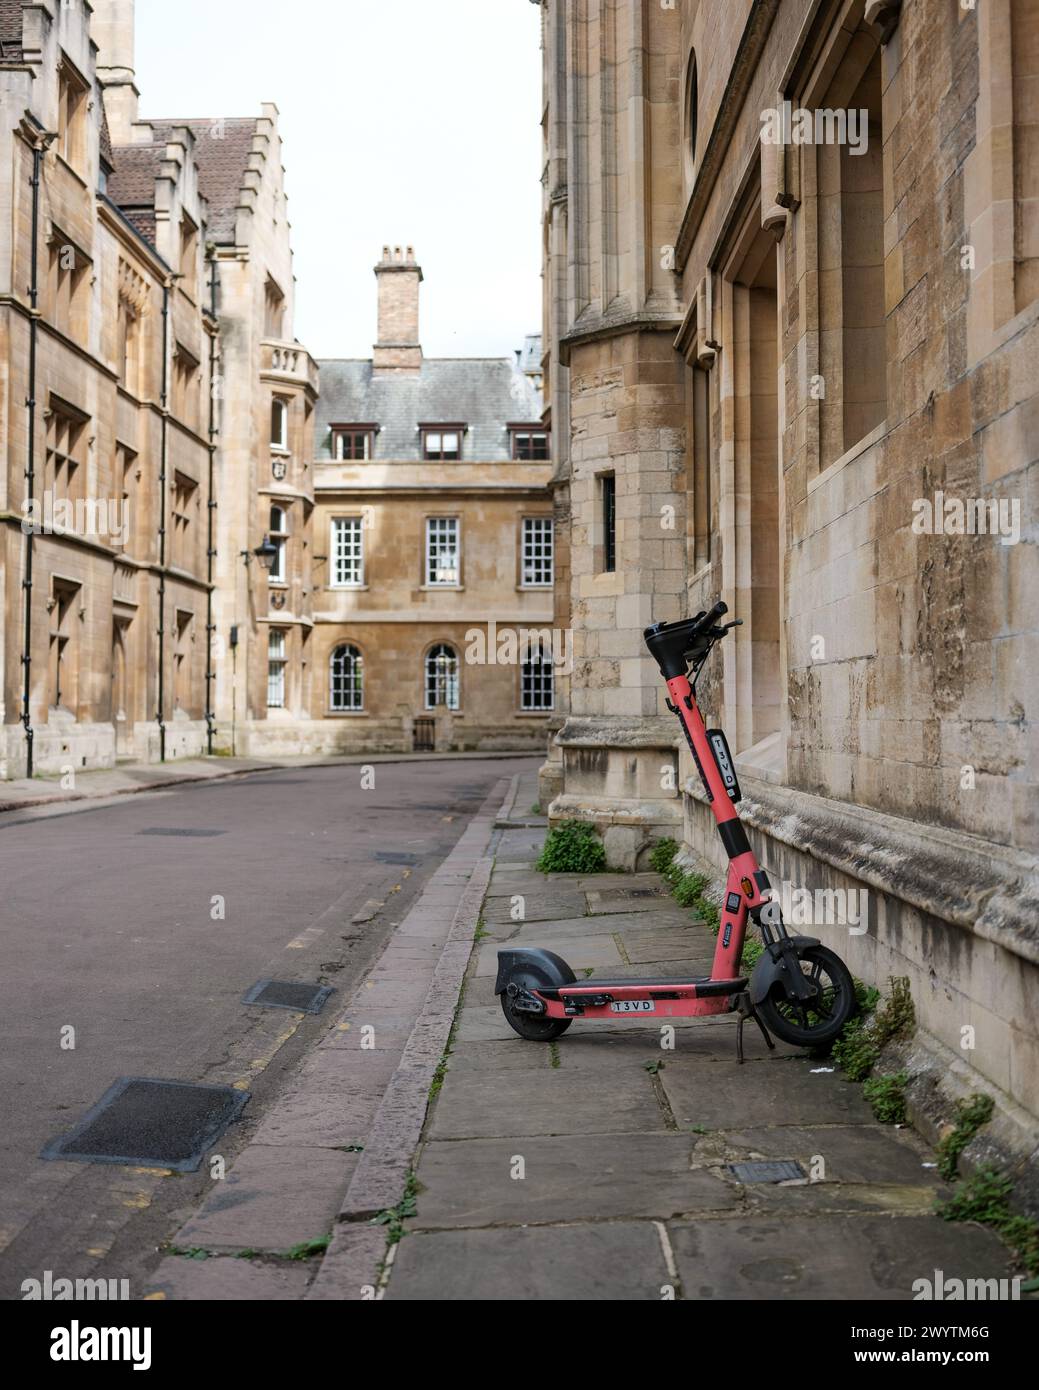 Scooters modernes garés sur une vieille rue près de l'Université à Cambridge Royaume-Uni, Banque D'Images